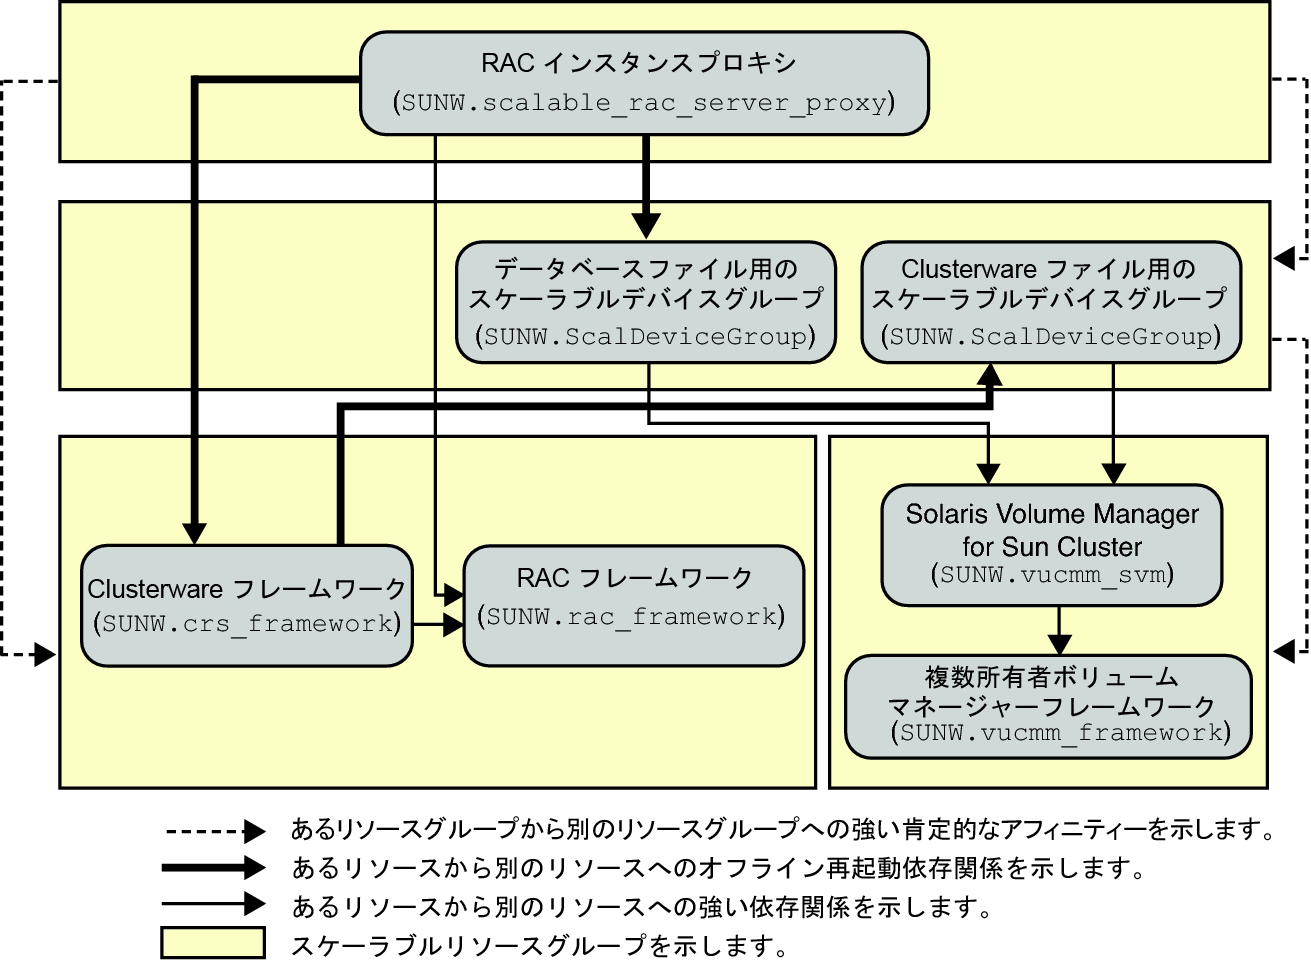 image:ボリュームマネージャーを使用した Oracle RAC のサポート の構成を示す図